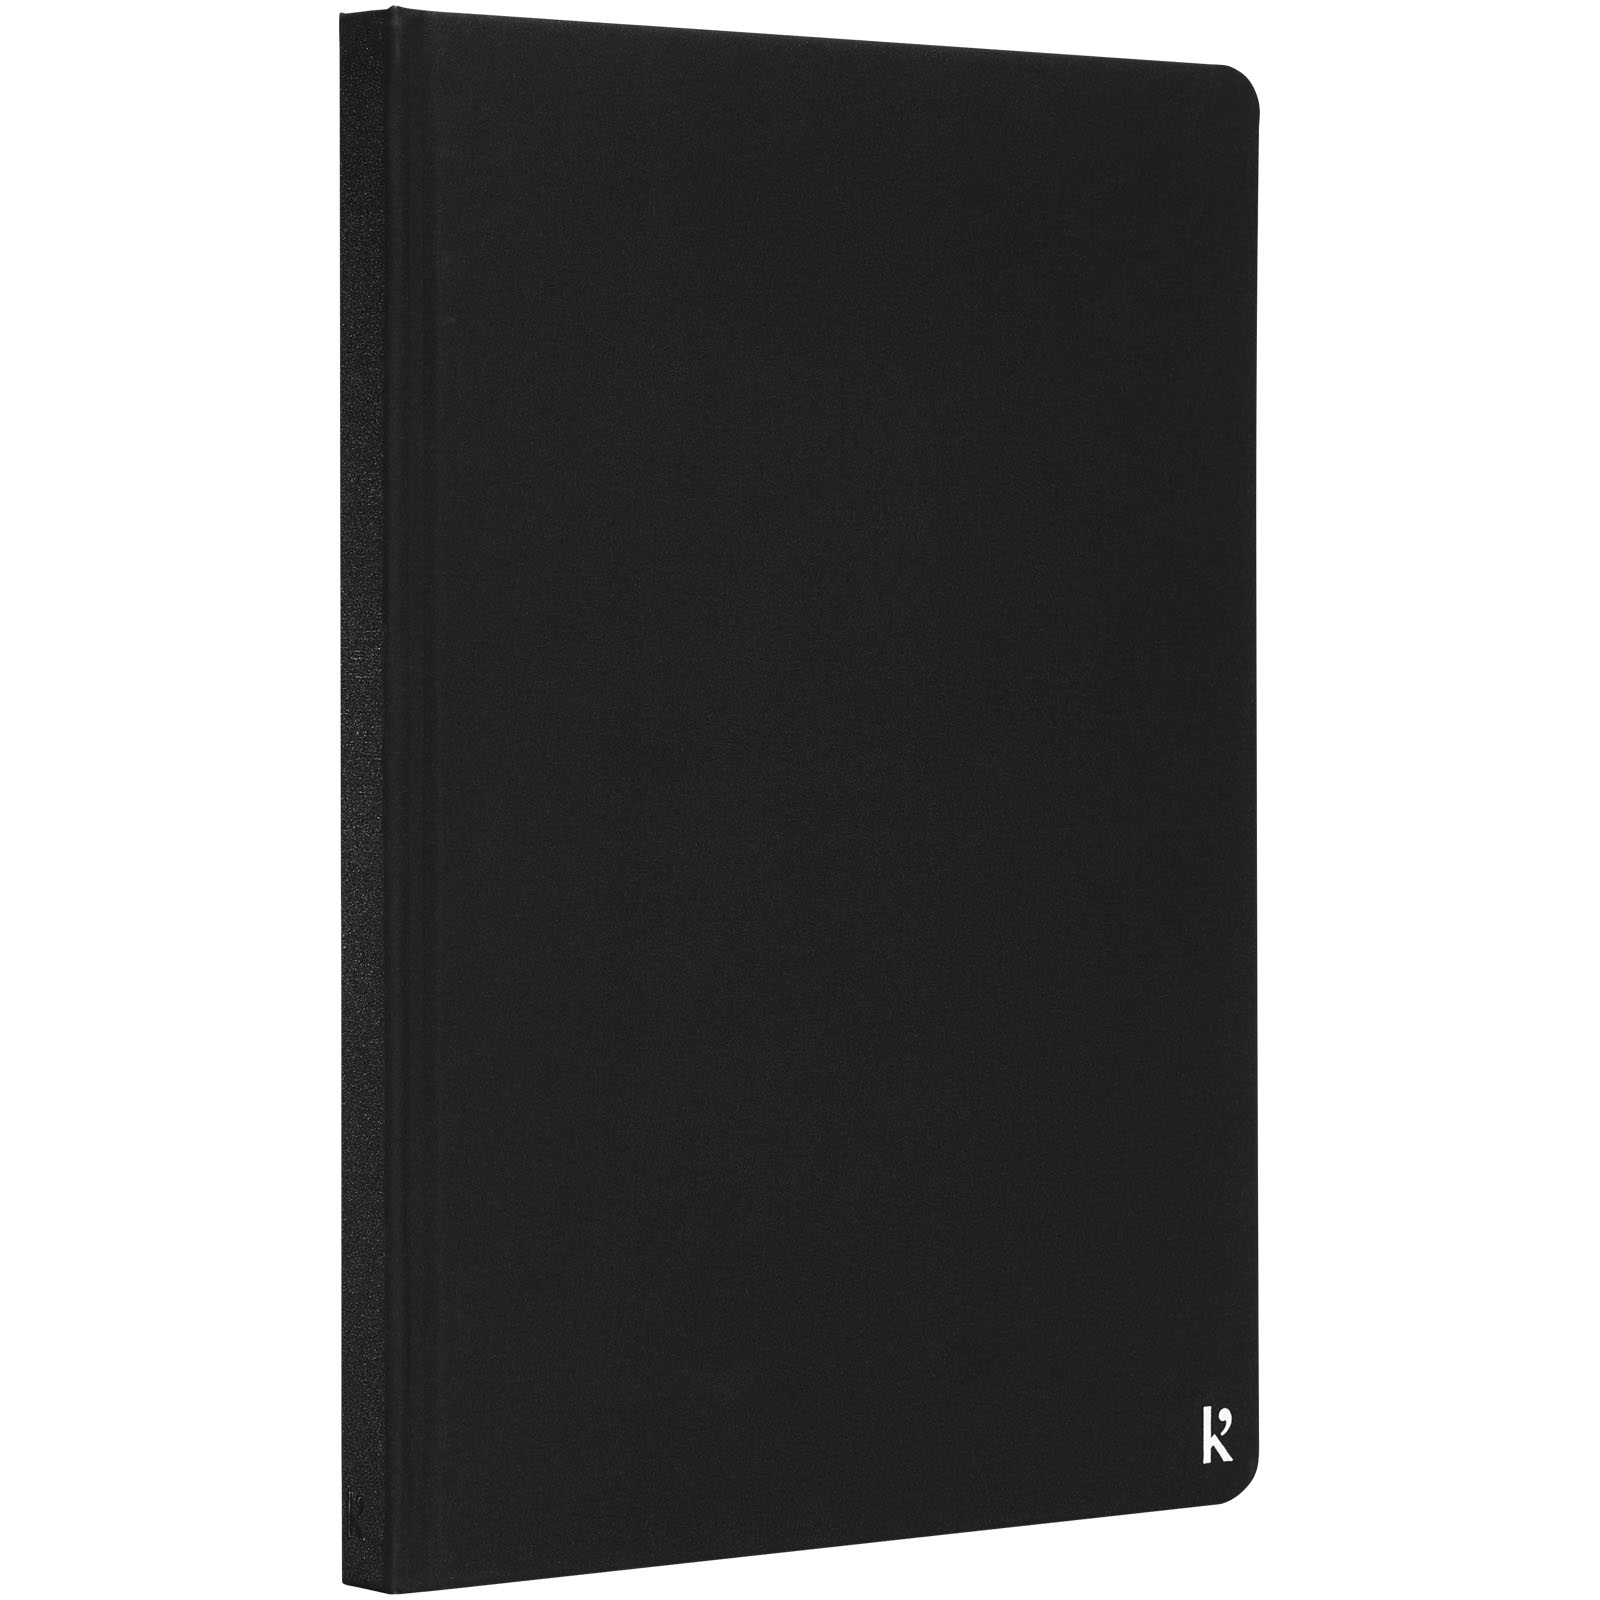 Karst® A5 notesbog med hardcover